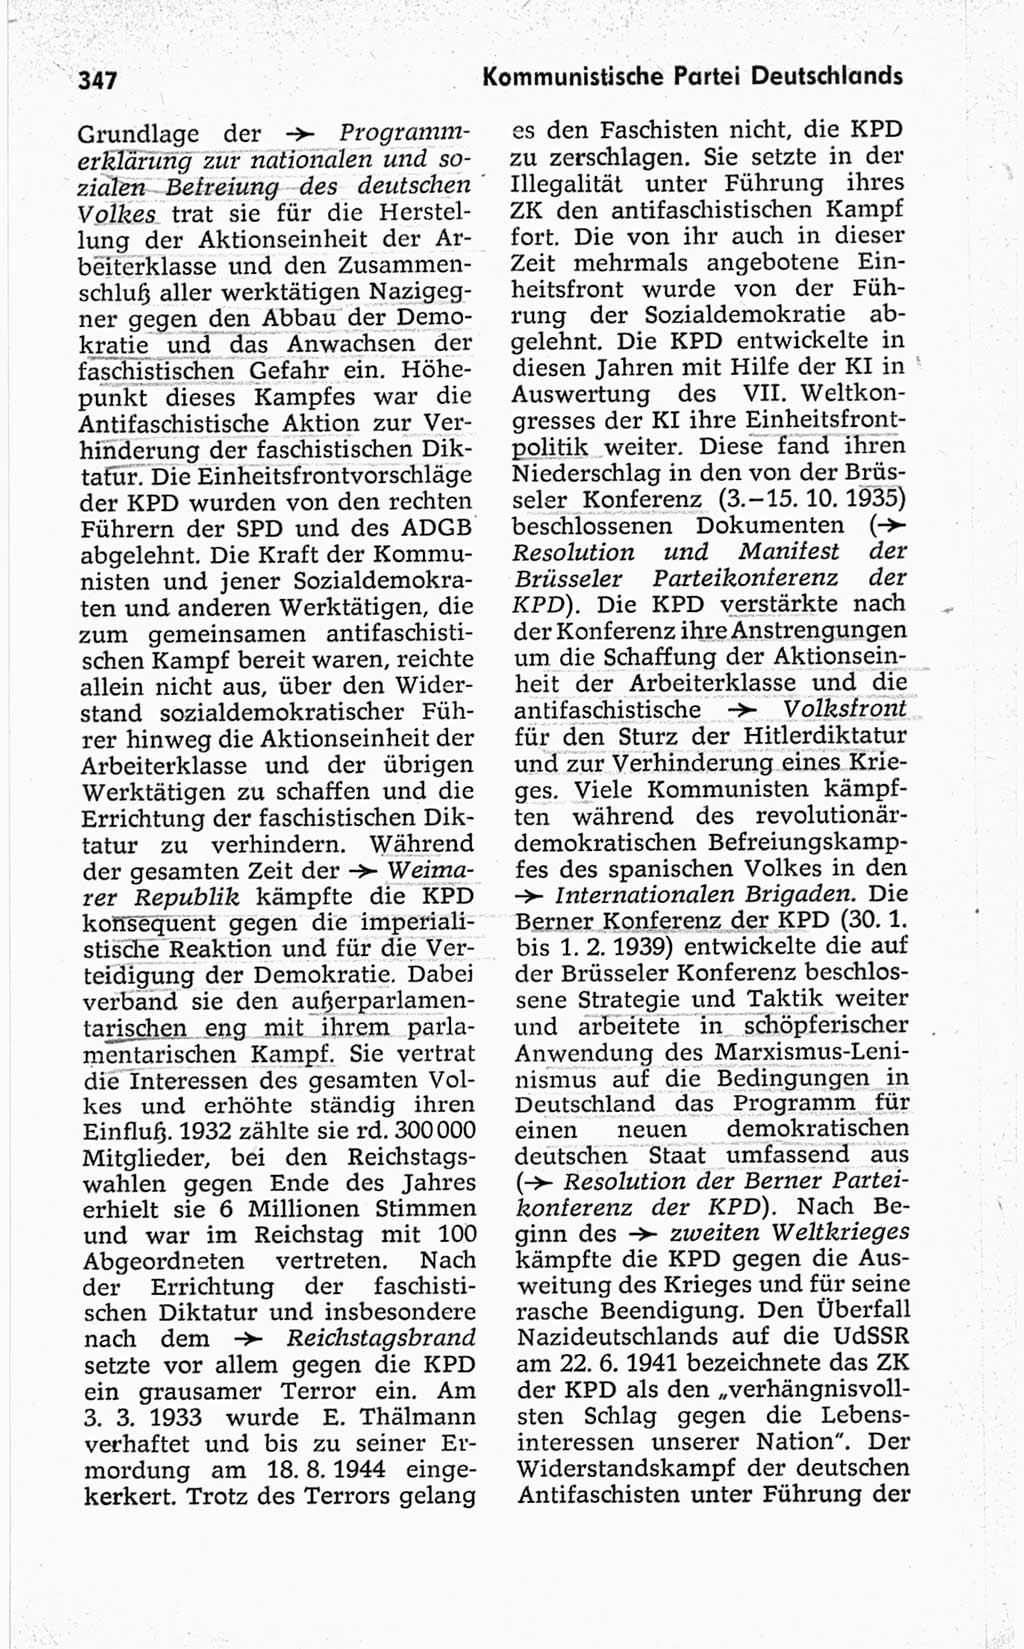 Kleines politisches Wörterbuch [Deutsche Demokratische Republik (DDR)] 1967, Seite 347 (Kl. pol. Wb. DDR 1967, S. 347)